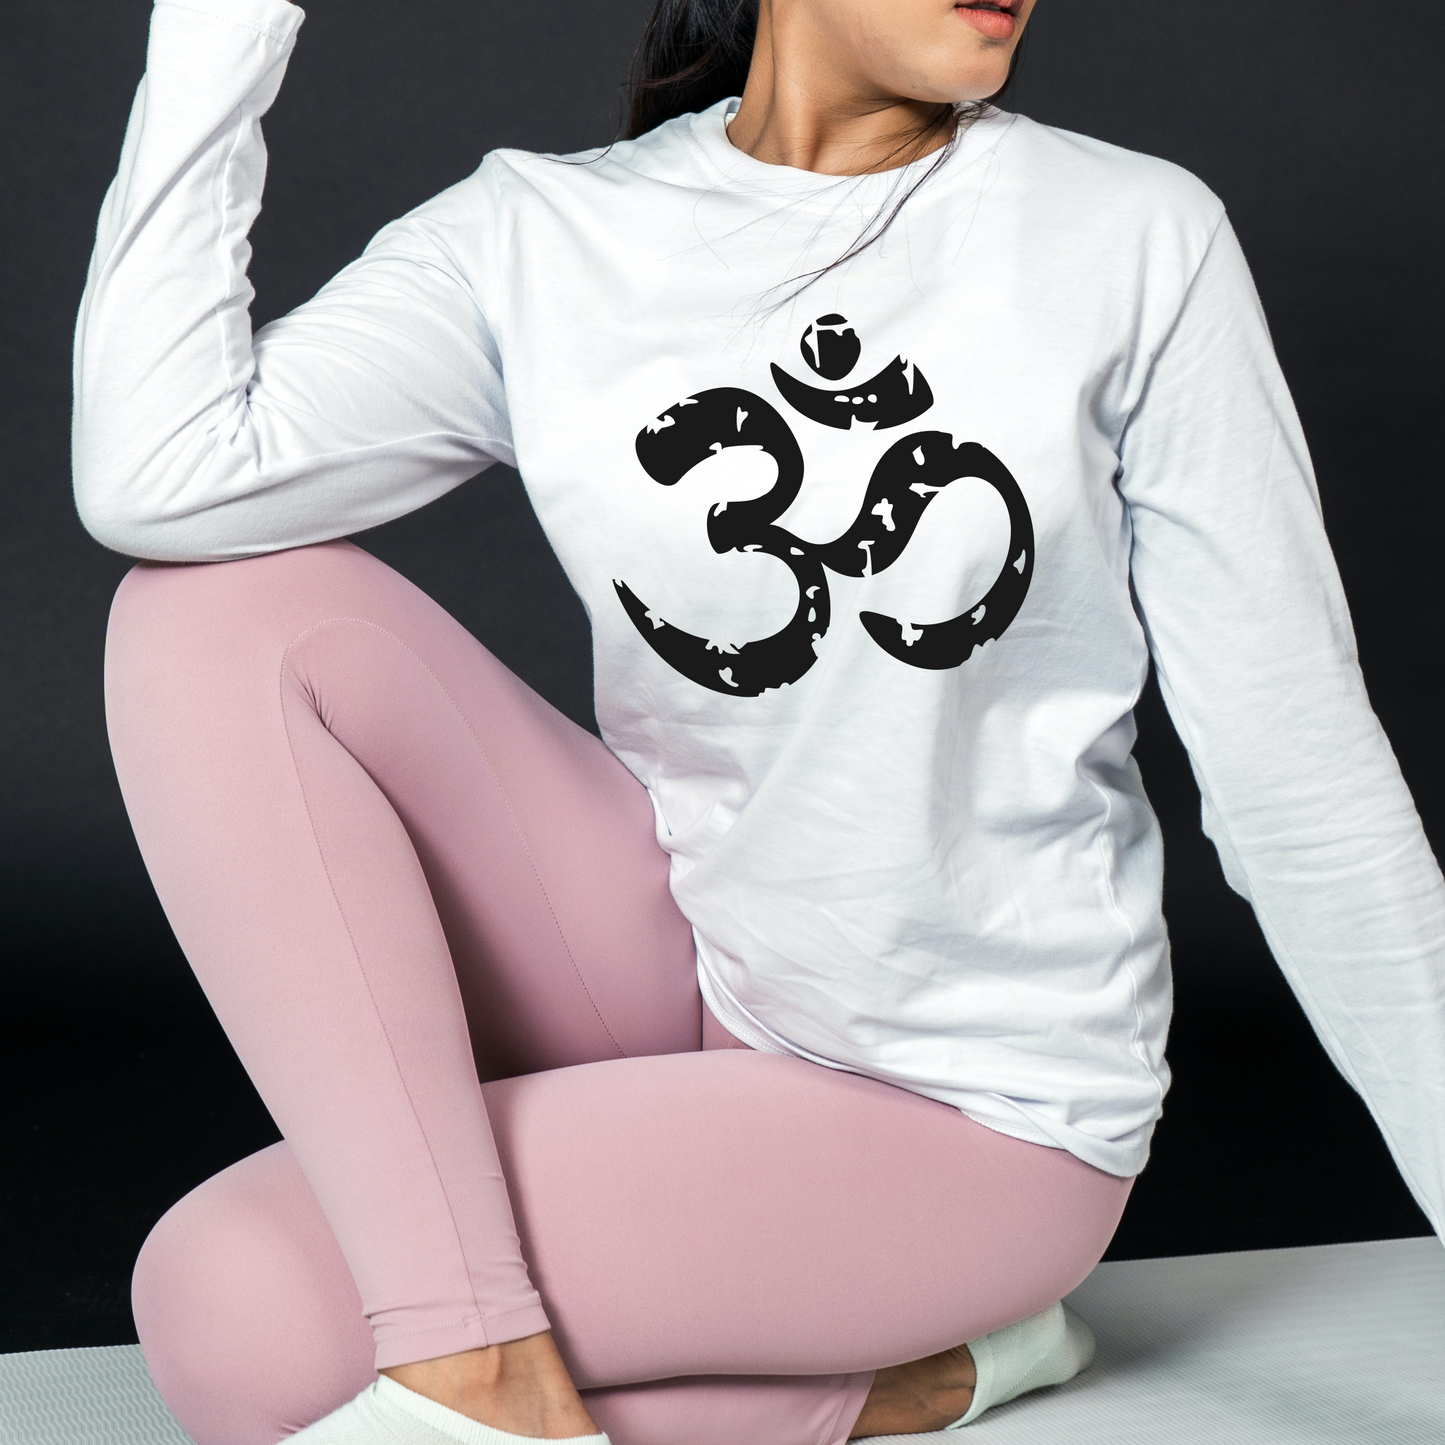 Yoga Om Symbol